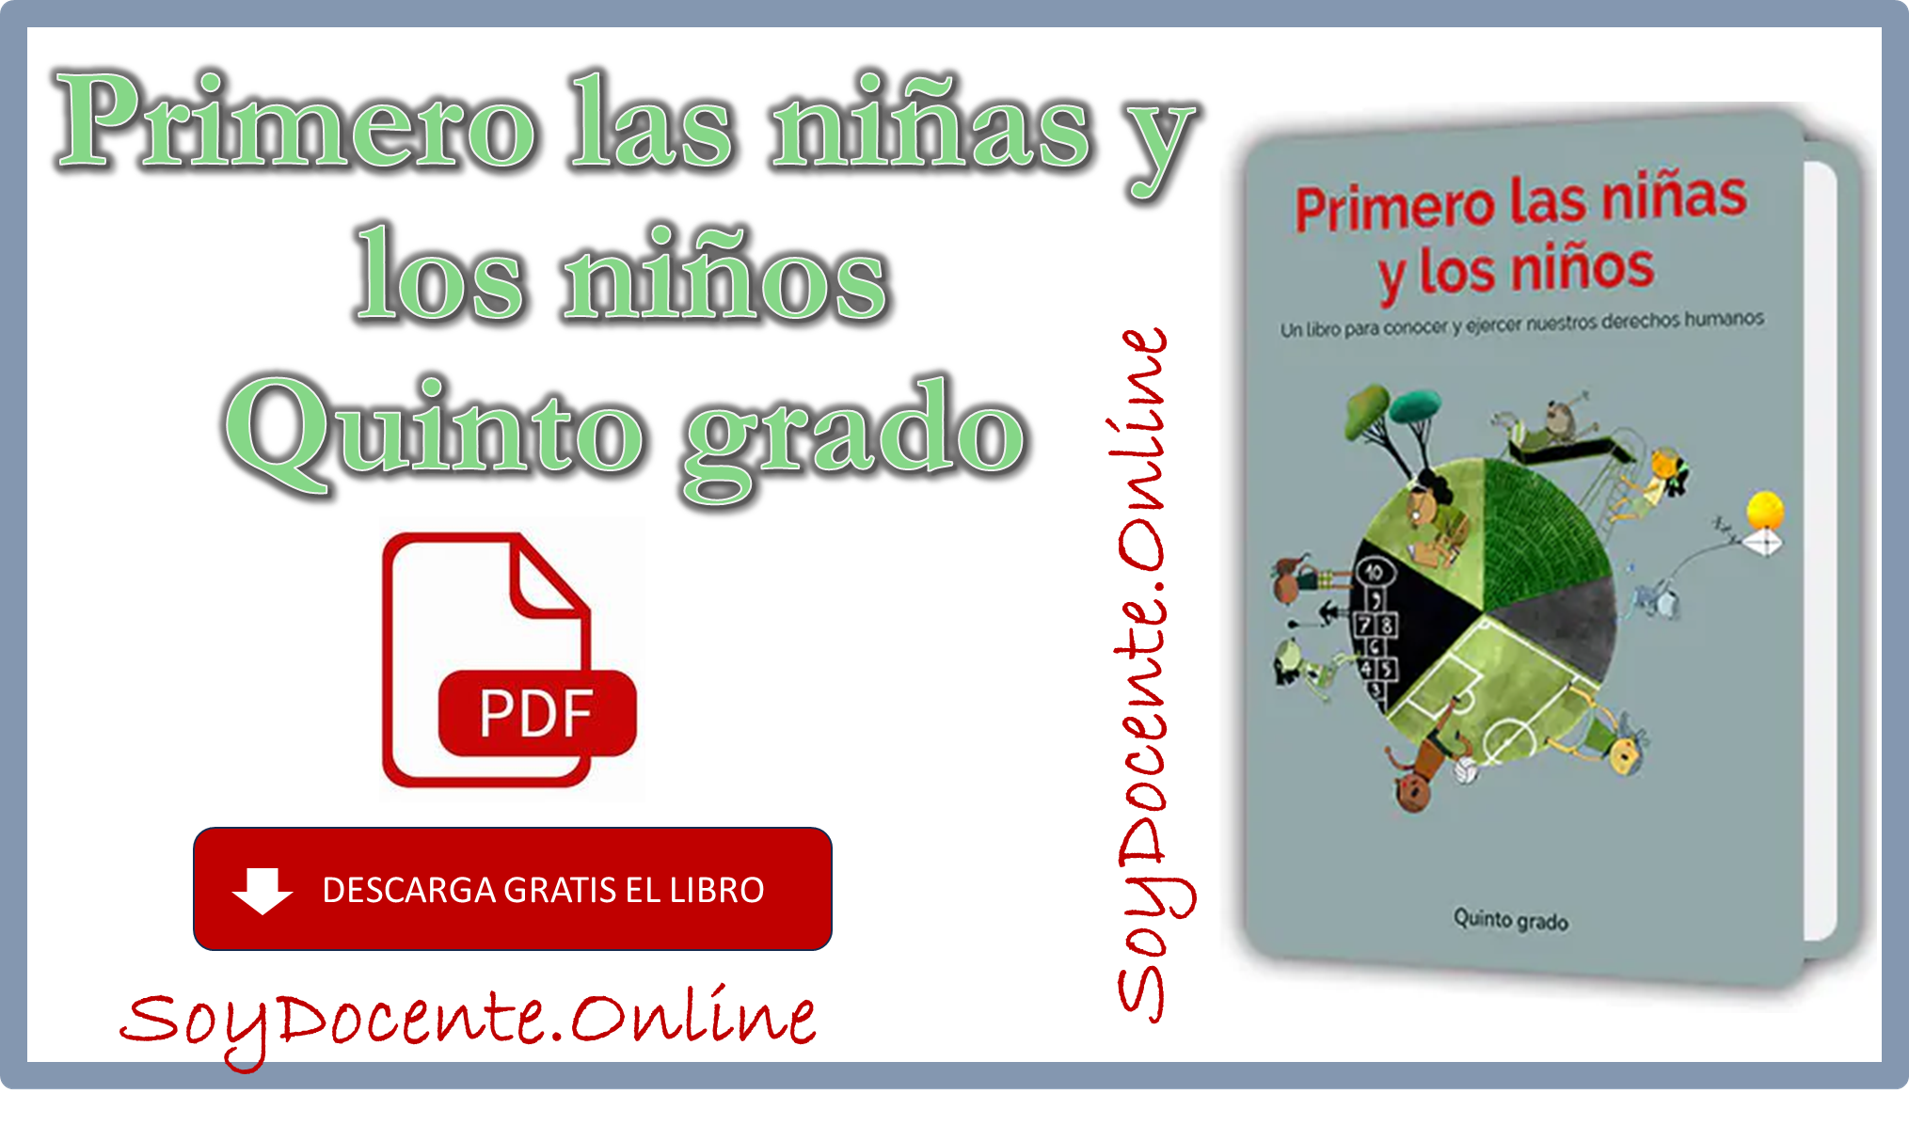 Ya puedes descargar en PDF el Libro de Primero las niñas y los niños quinto grado de Primaria por la SEP, distribuido por la CONALITEG. Gratis